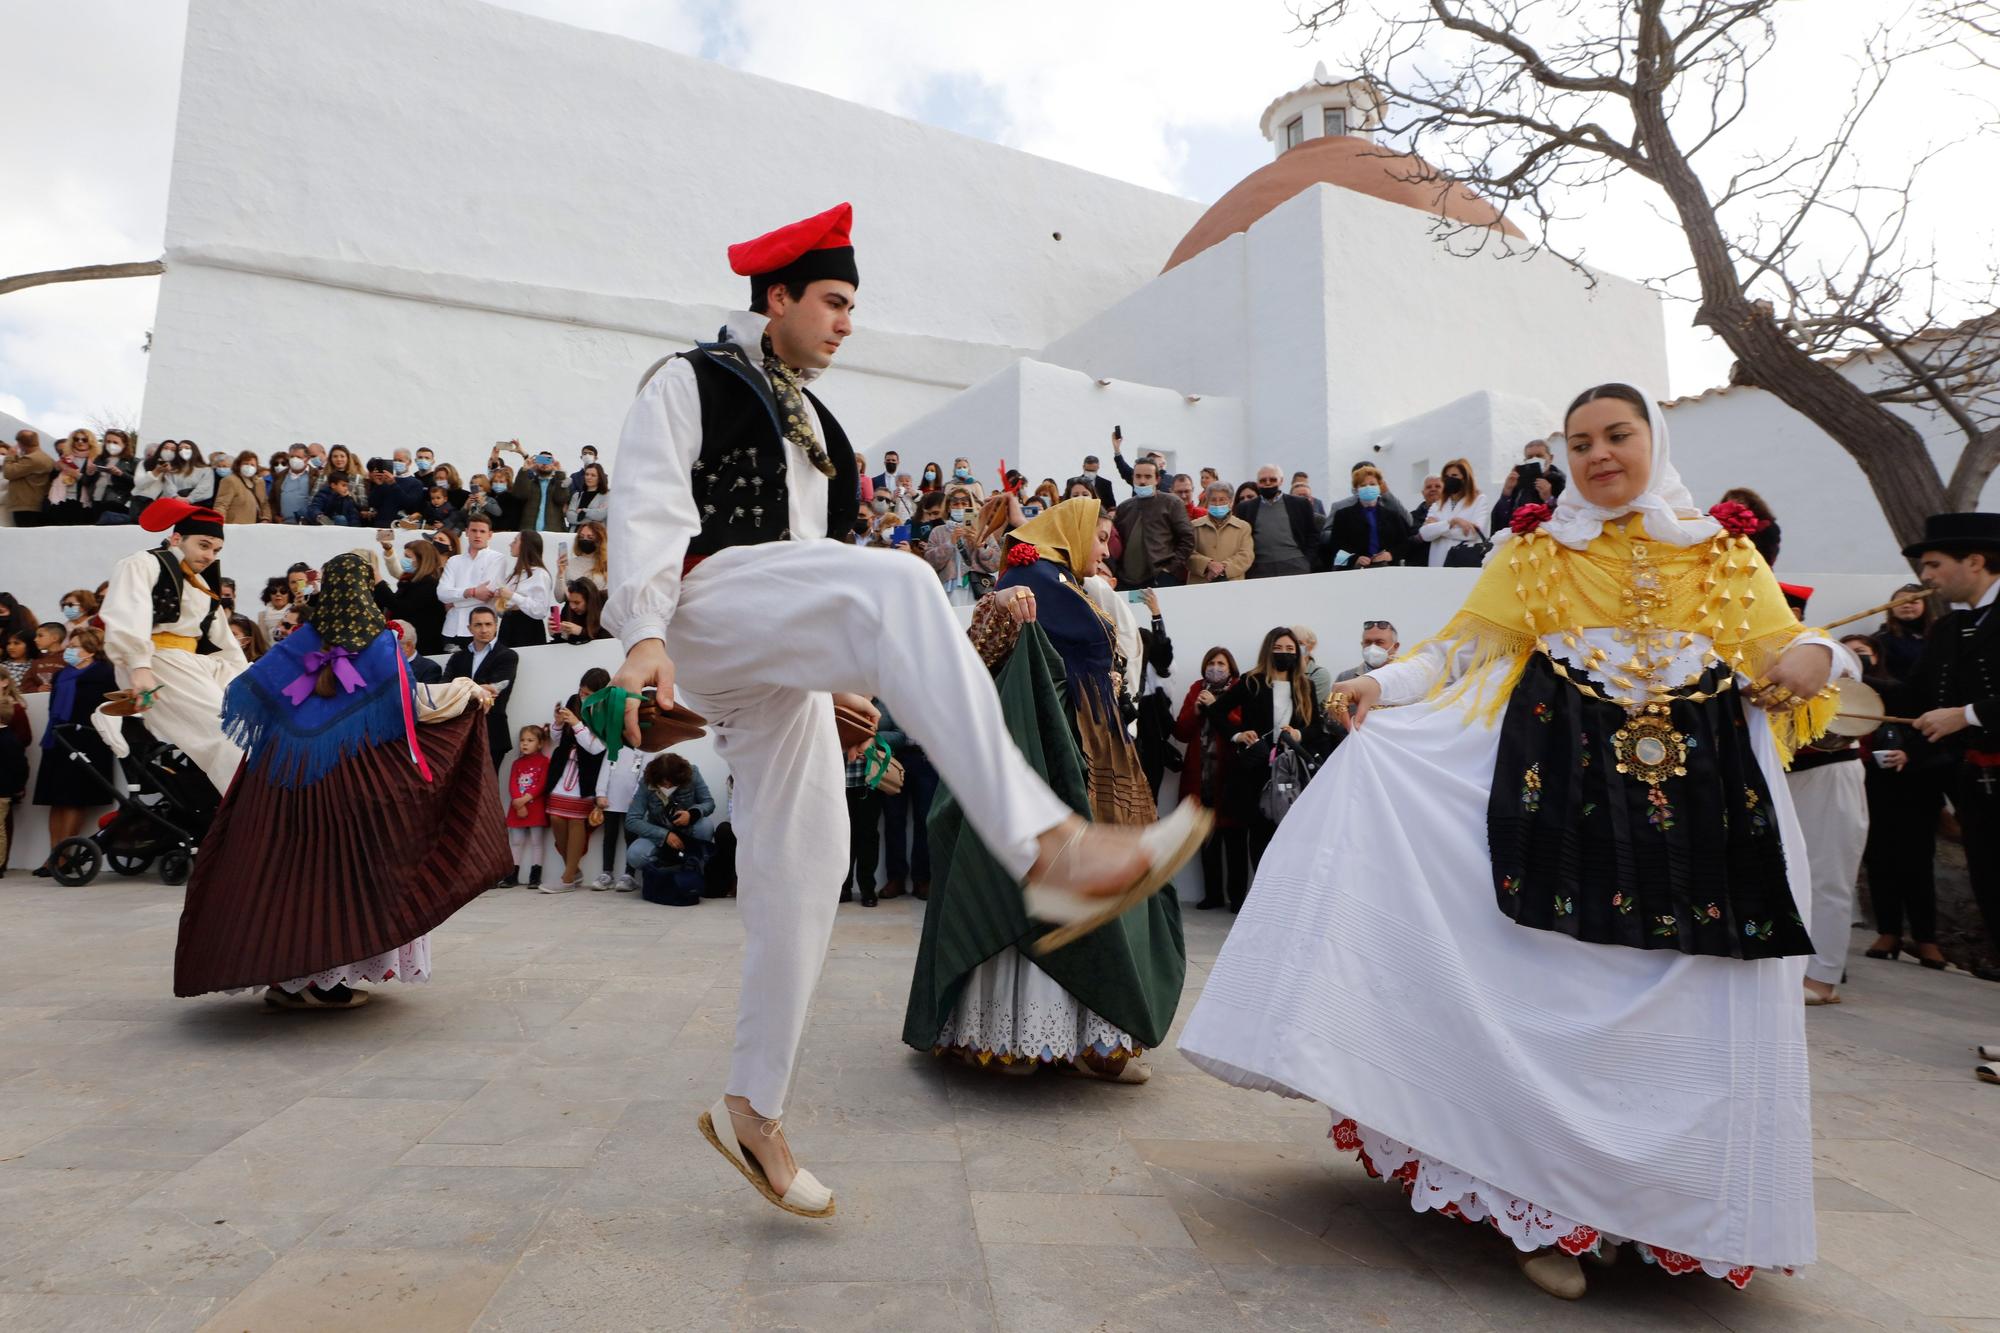 Galería de imágenes: Fiestas de Santa Eulària en Ibiza